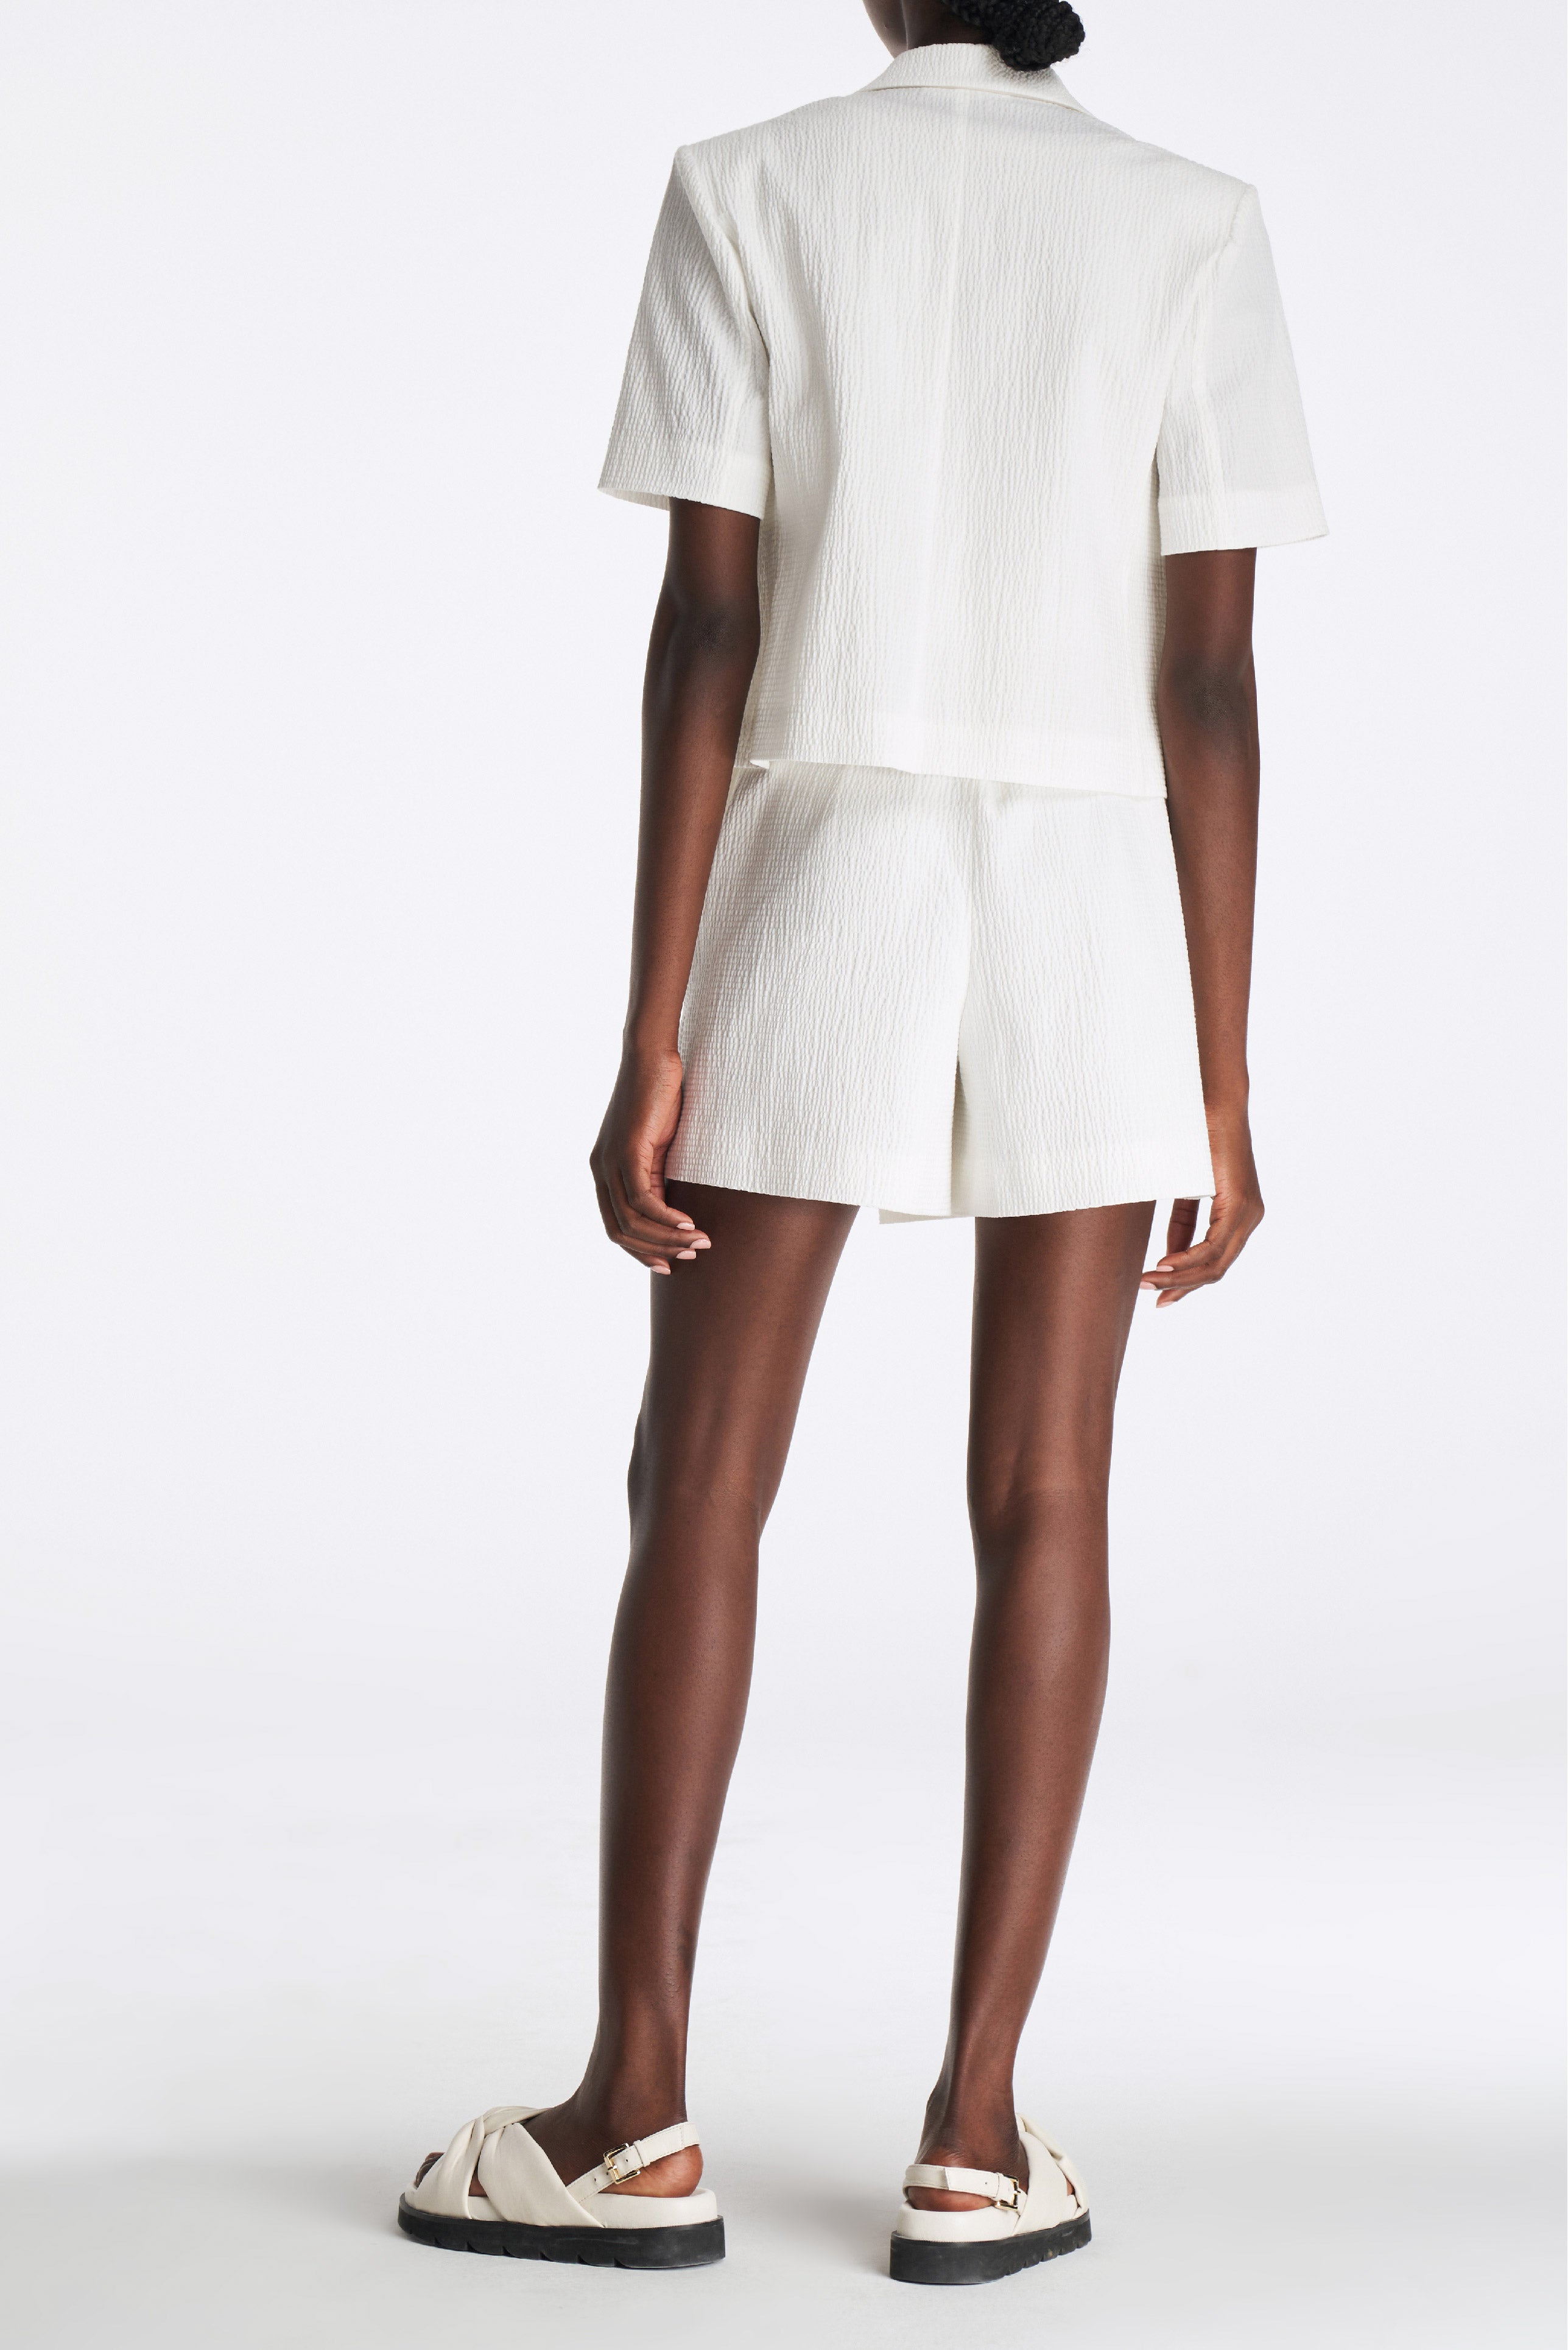 Laurèl White Cotton A-line Shorts